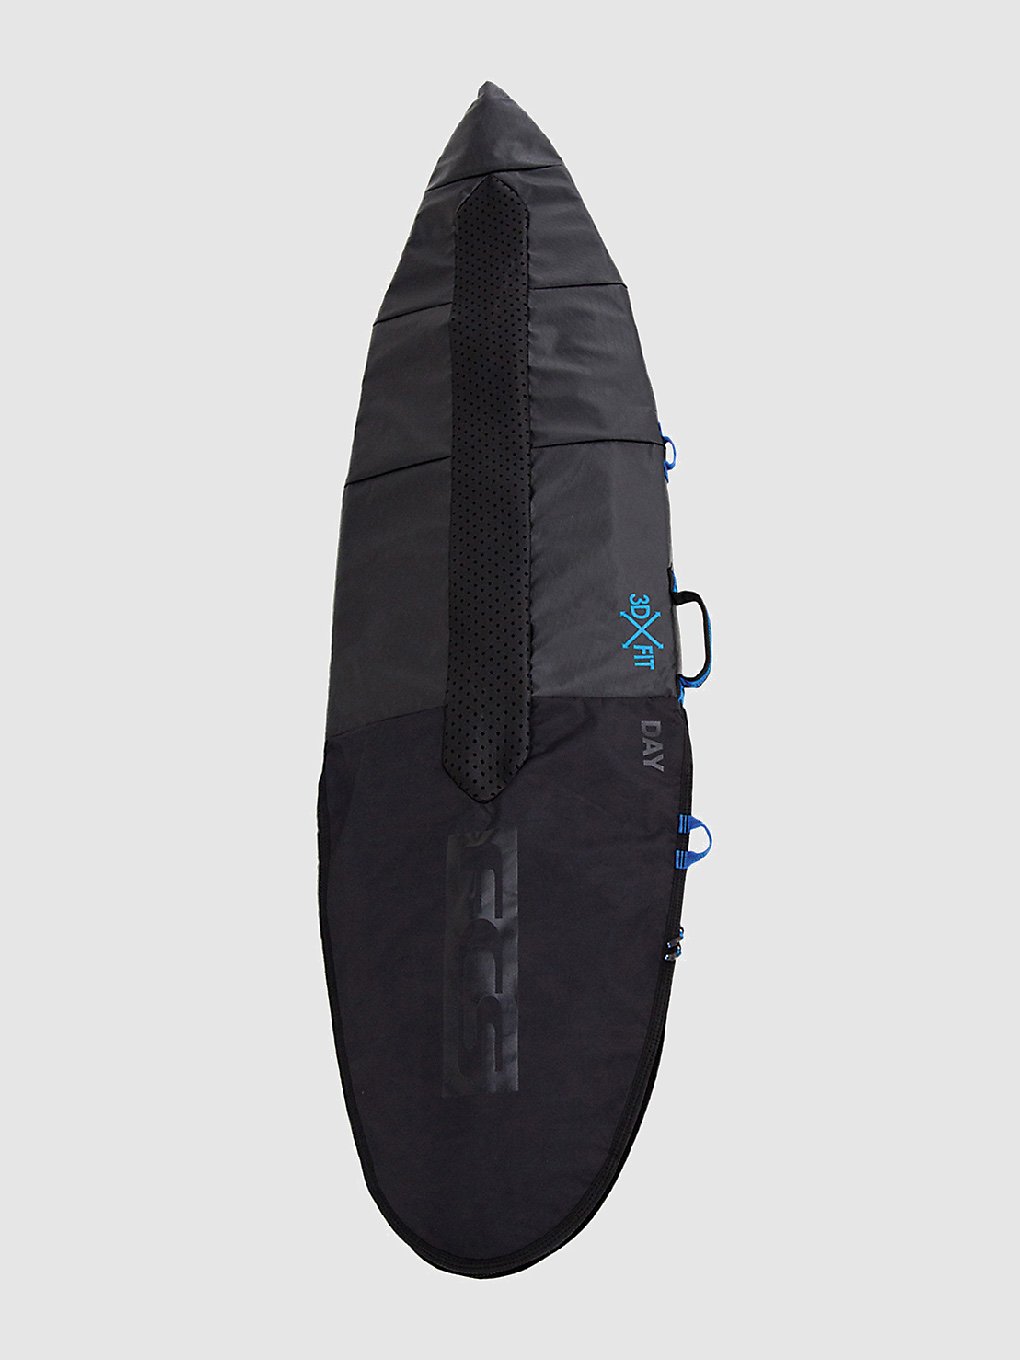 FCS Day All Purpose 6'0 Surfboard-Tasche black kaufen